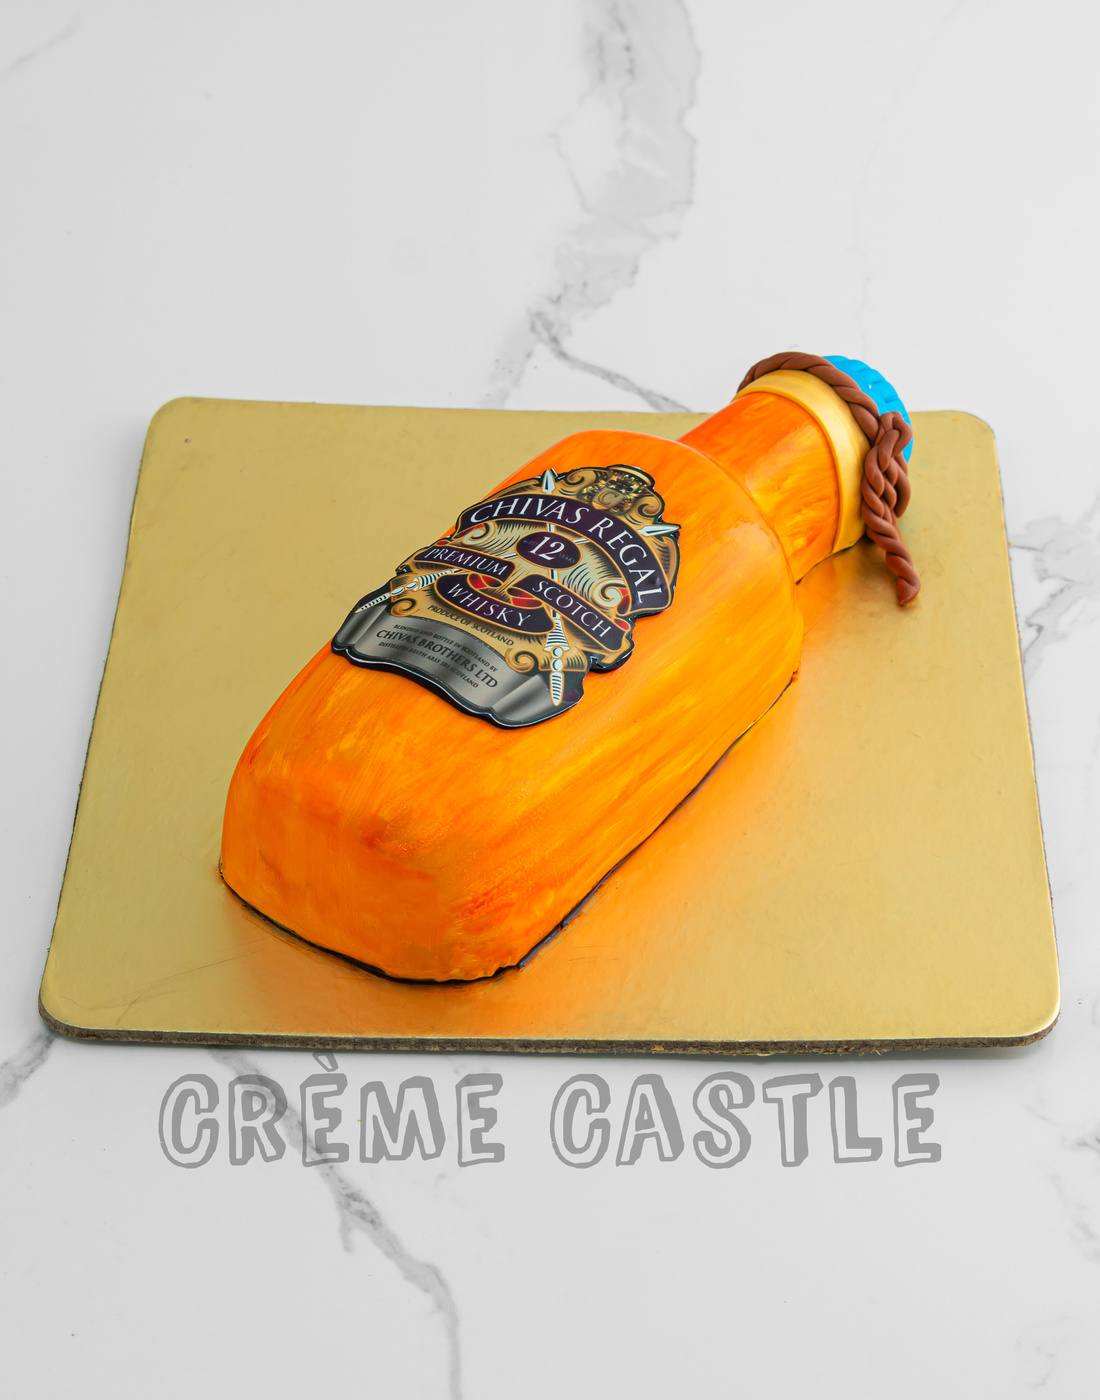 Chivas Regal Bottle Theme Cake - Creme Castle